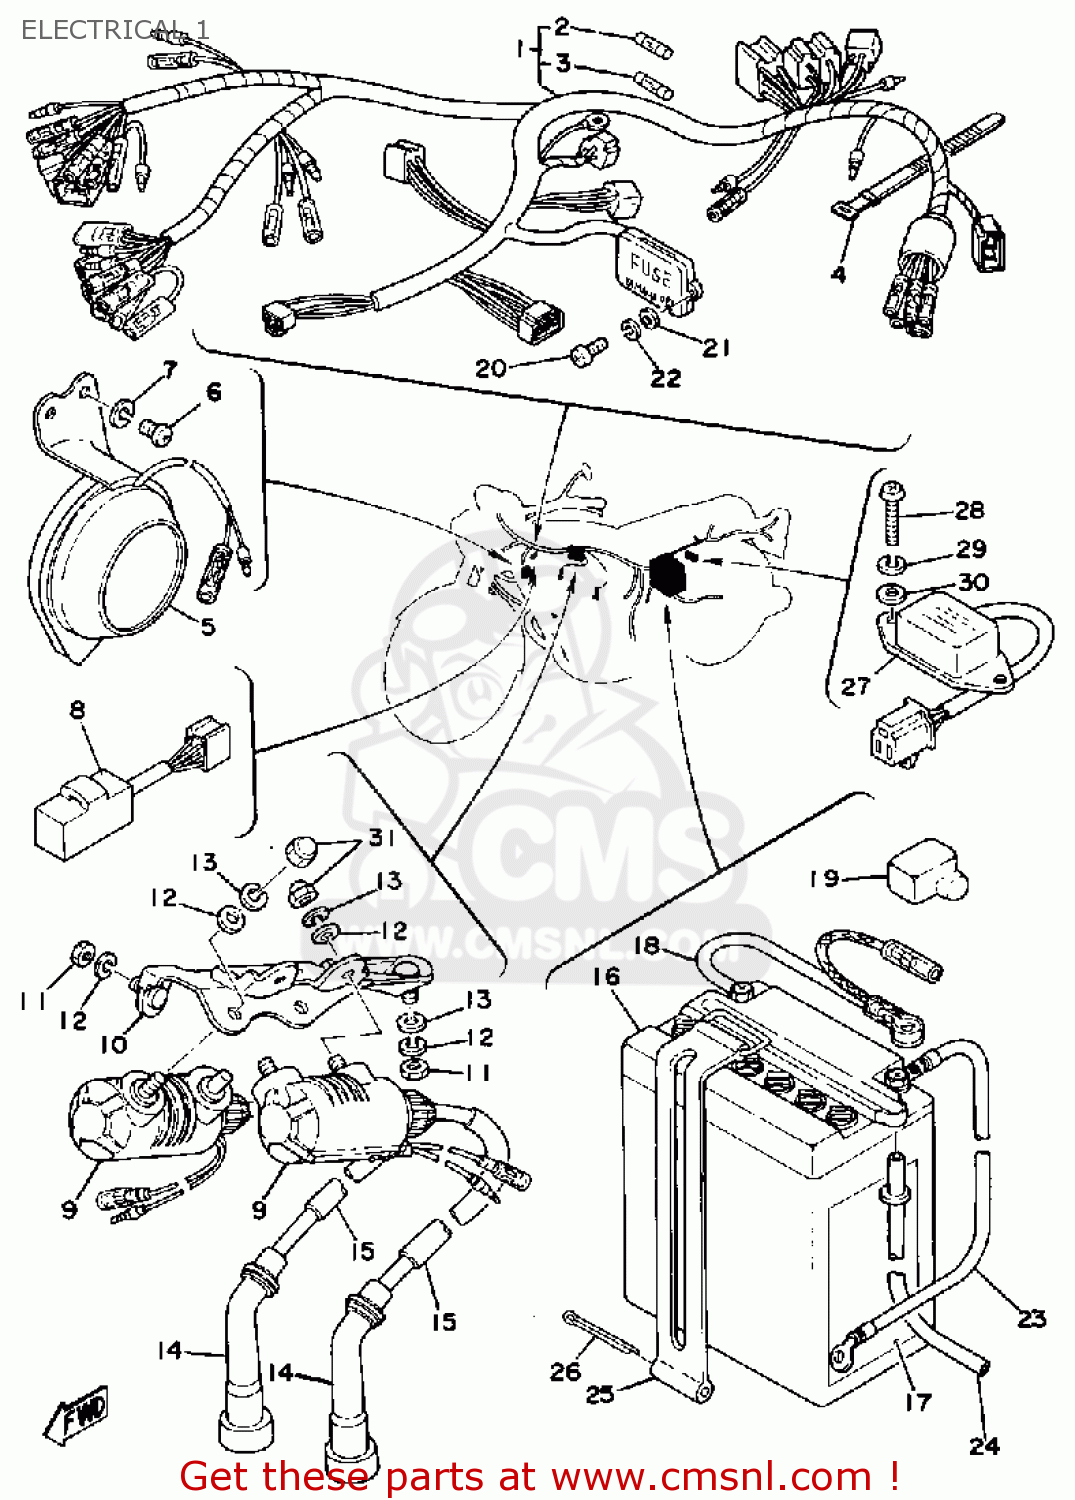 1978 xs650 wiring diagram